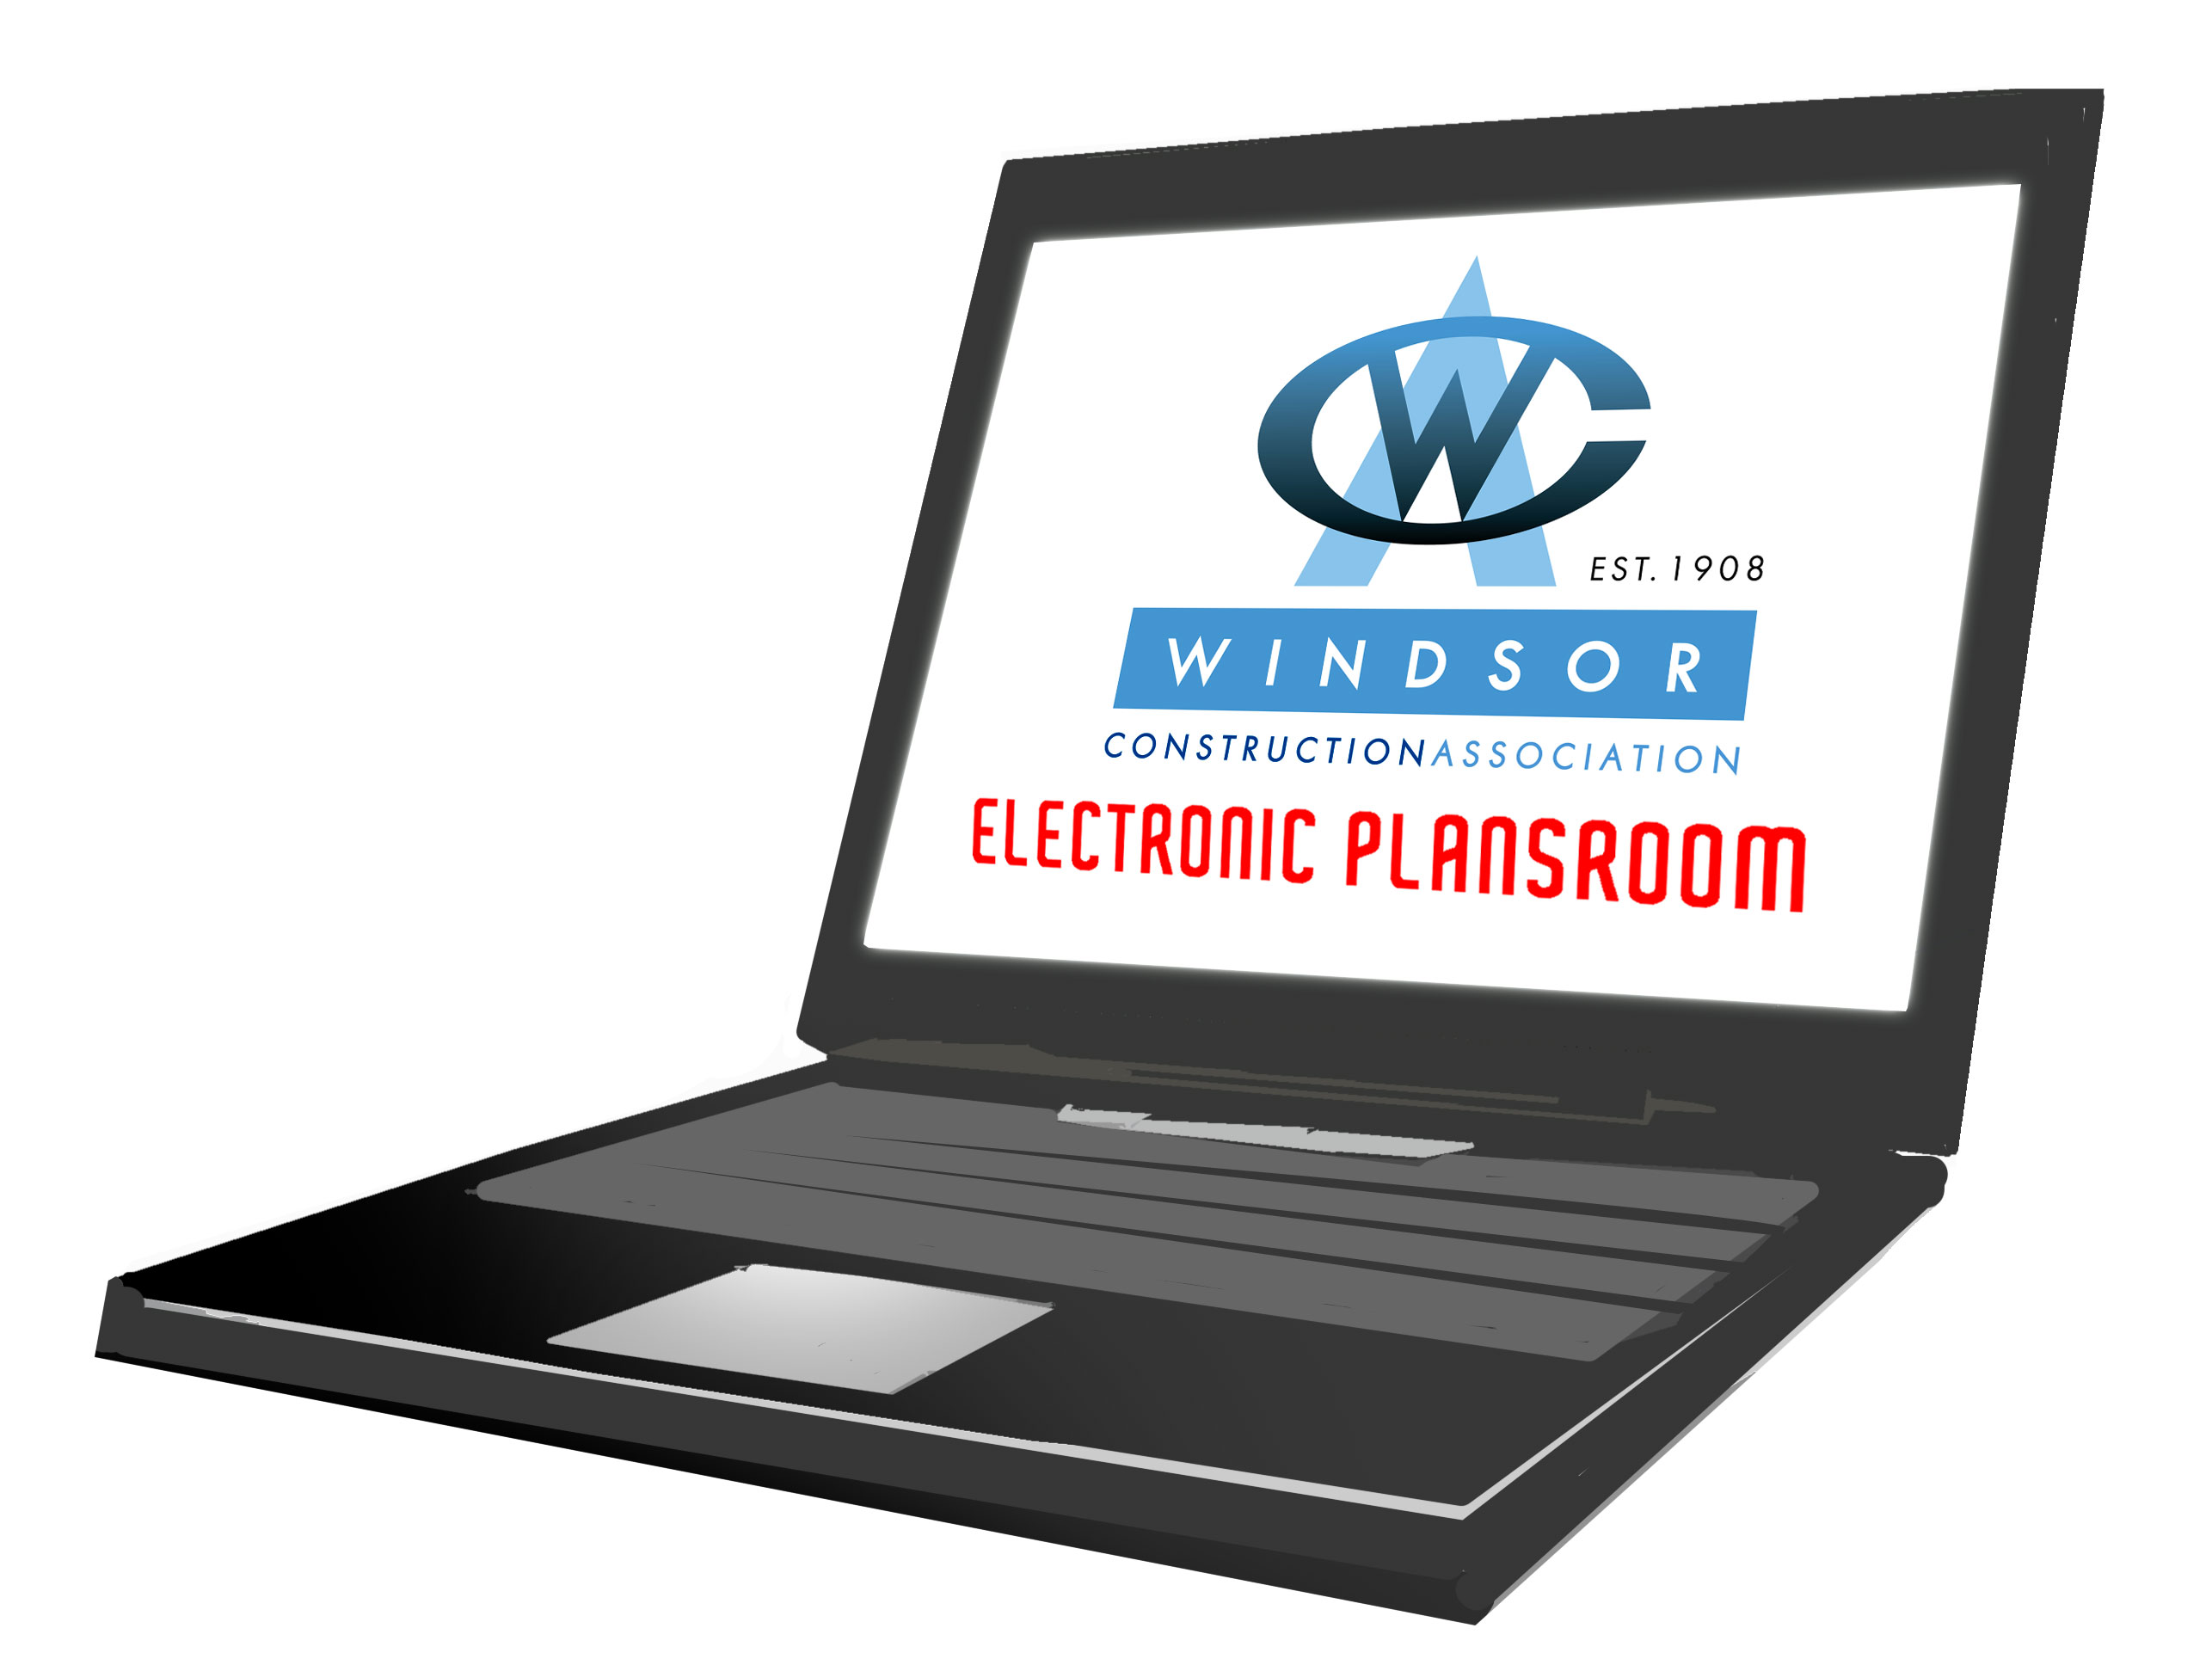 laptop logo